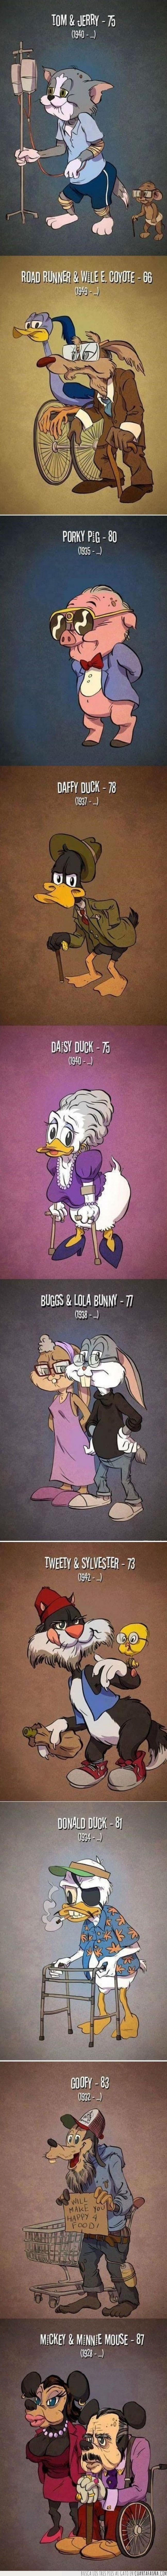 31437 - Así envejecerían los animales más famosos de los dibujos animados